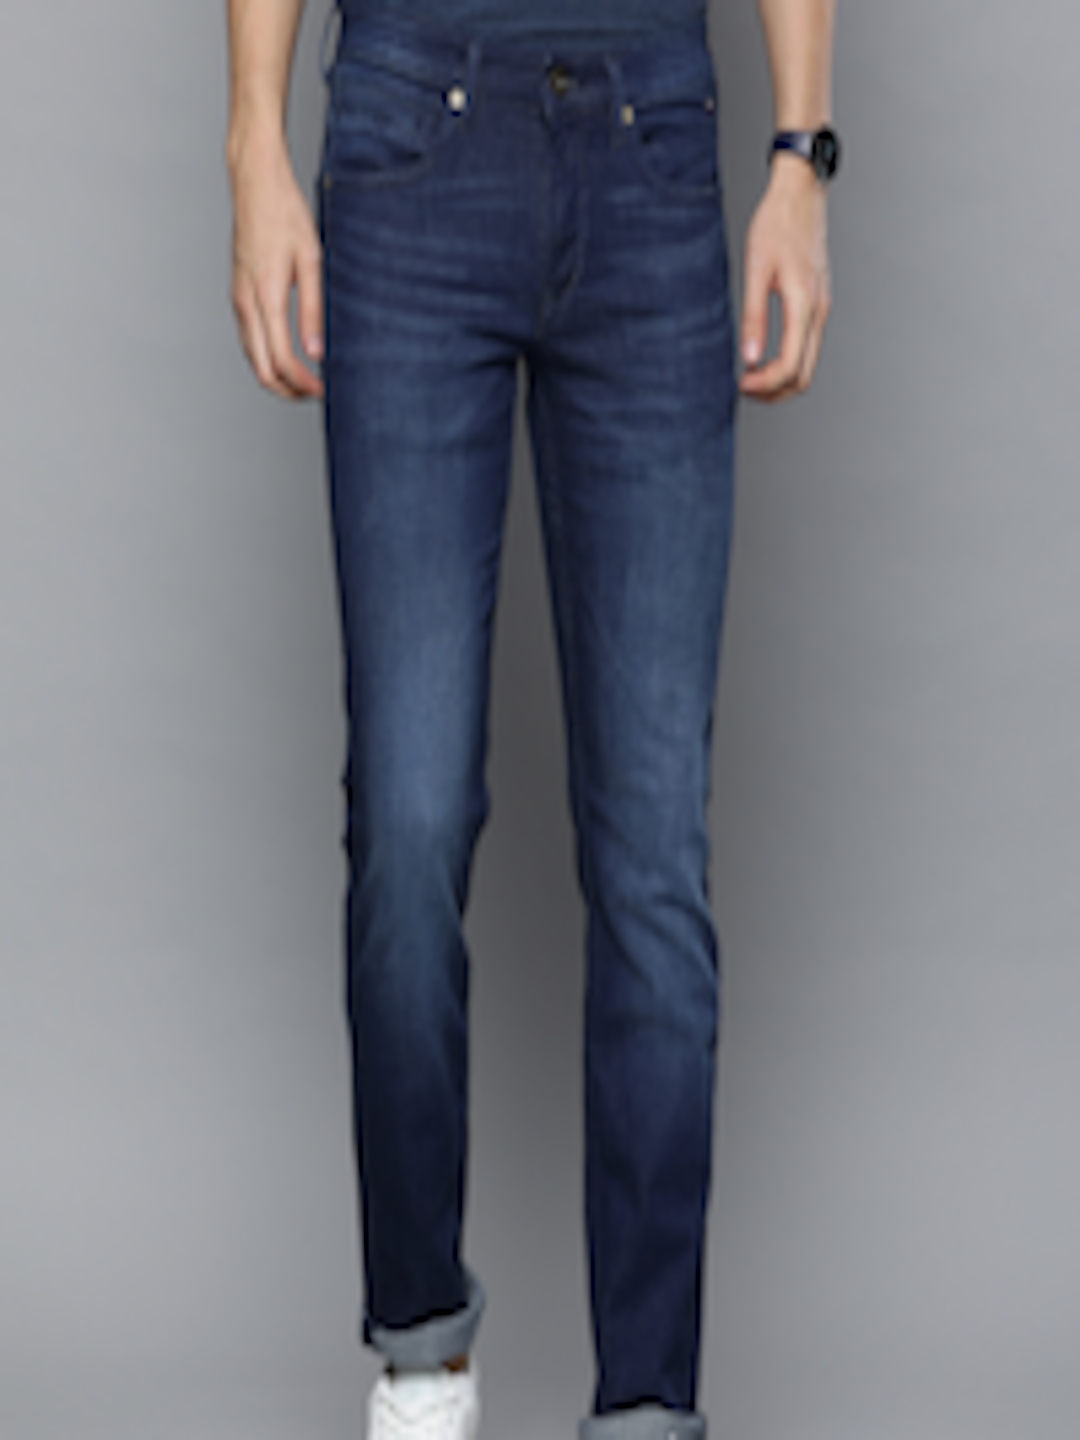 Buy Louis Philippe Jeans Men Blue MATT Slim Fit Low Rise Clean Look Stretchable Jeans - Jeans ...